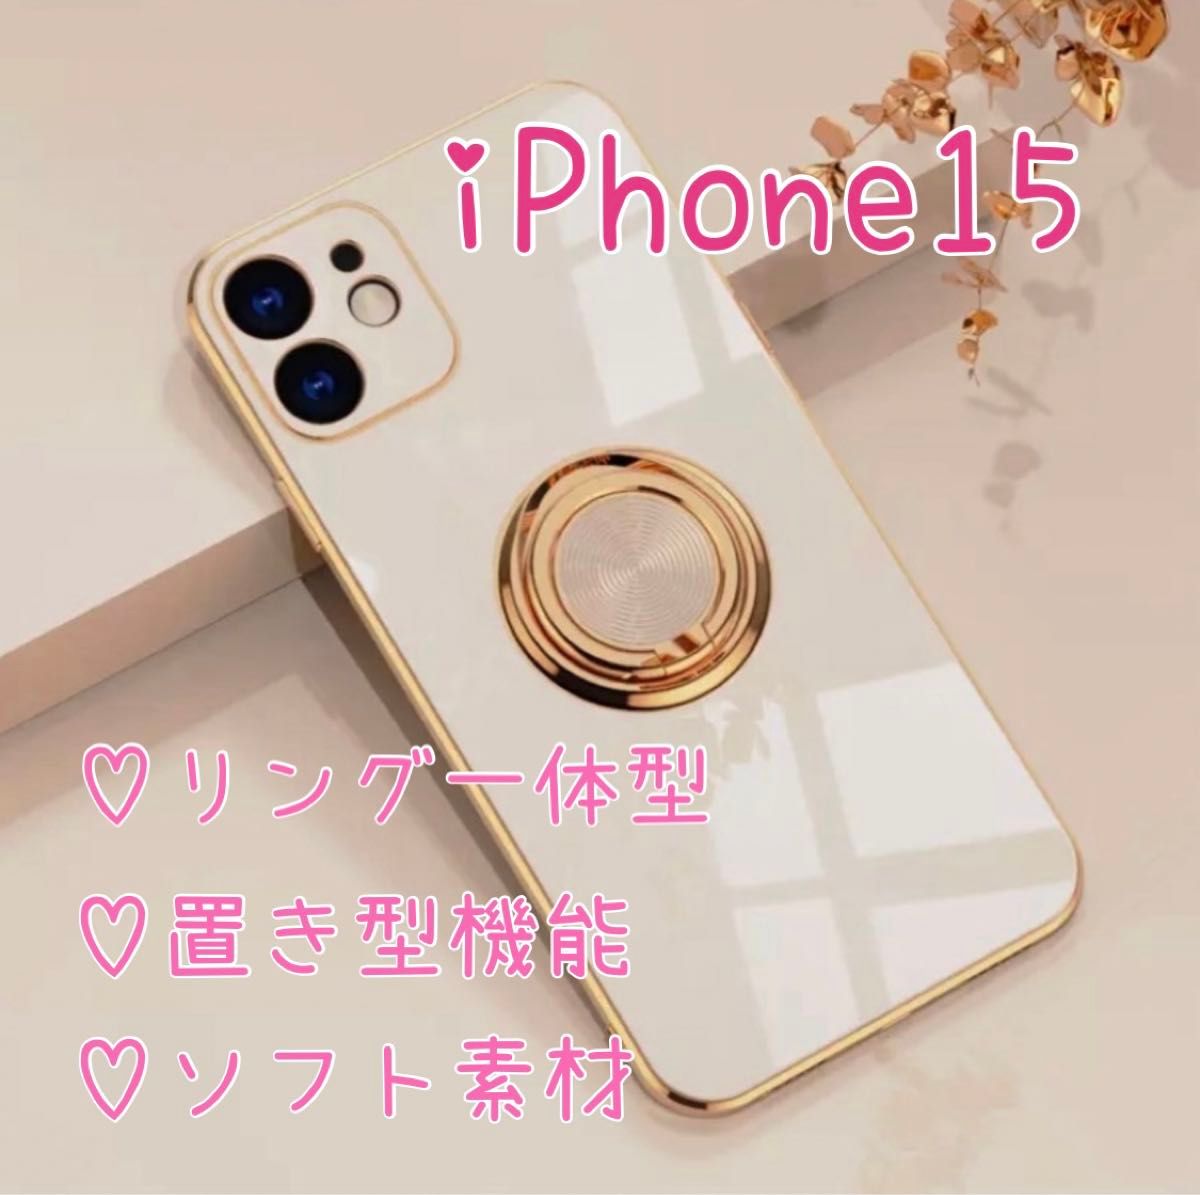 リング付き iPhone ケース iPhone15 ホワイト 高級感 韓国 白